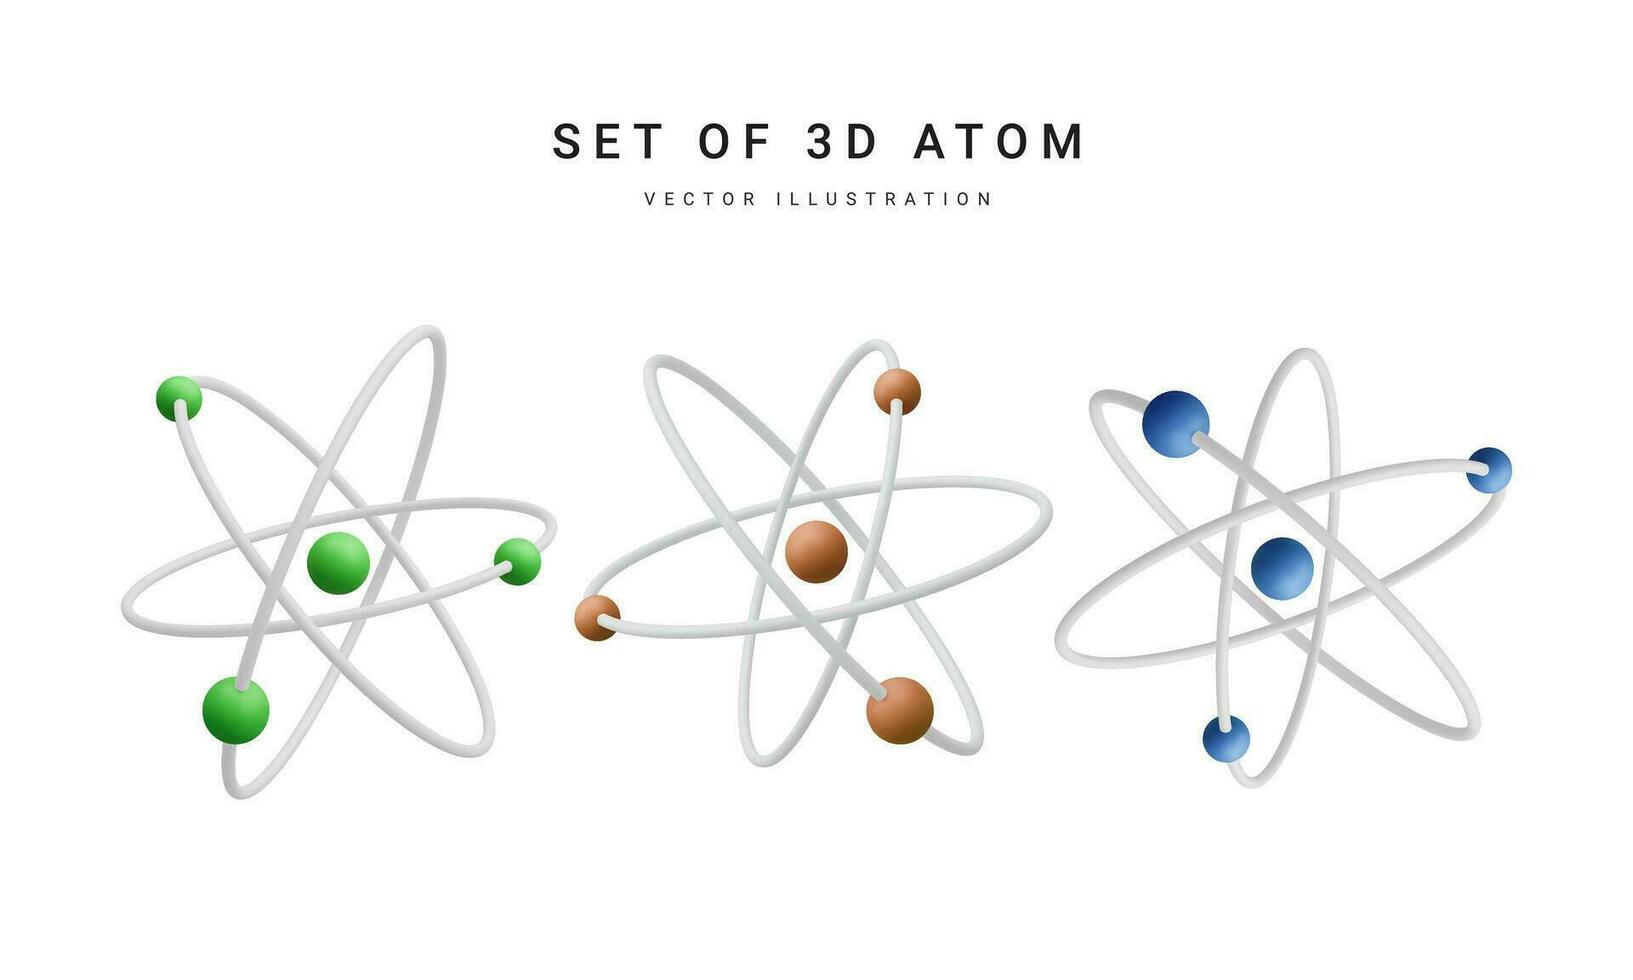 uppsättning av 3d realistisk atom med orbital elektroner isolerat på vit bakgrund. kärn energi, vetenskaplig forskning, molekyl kemi, fysik vetenskap begrepp. vektor illustration